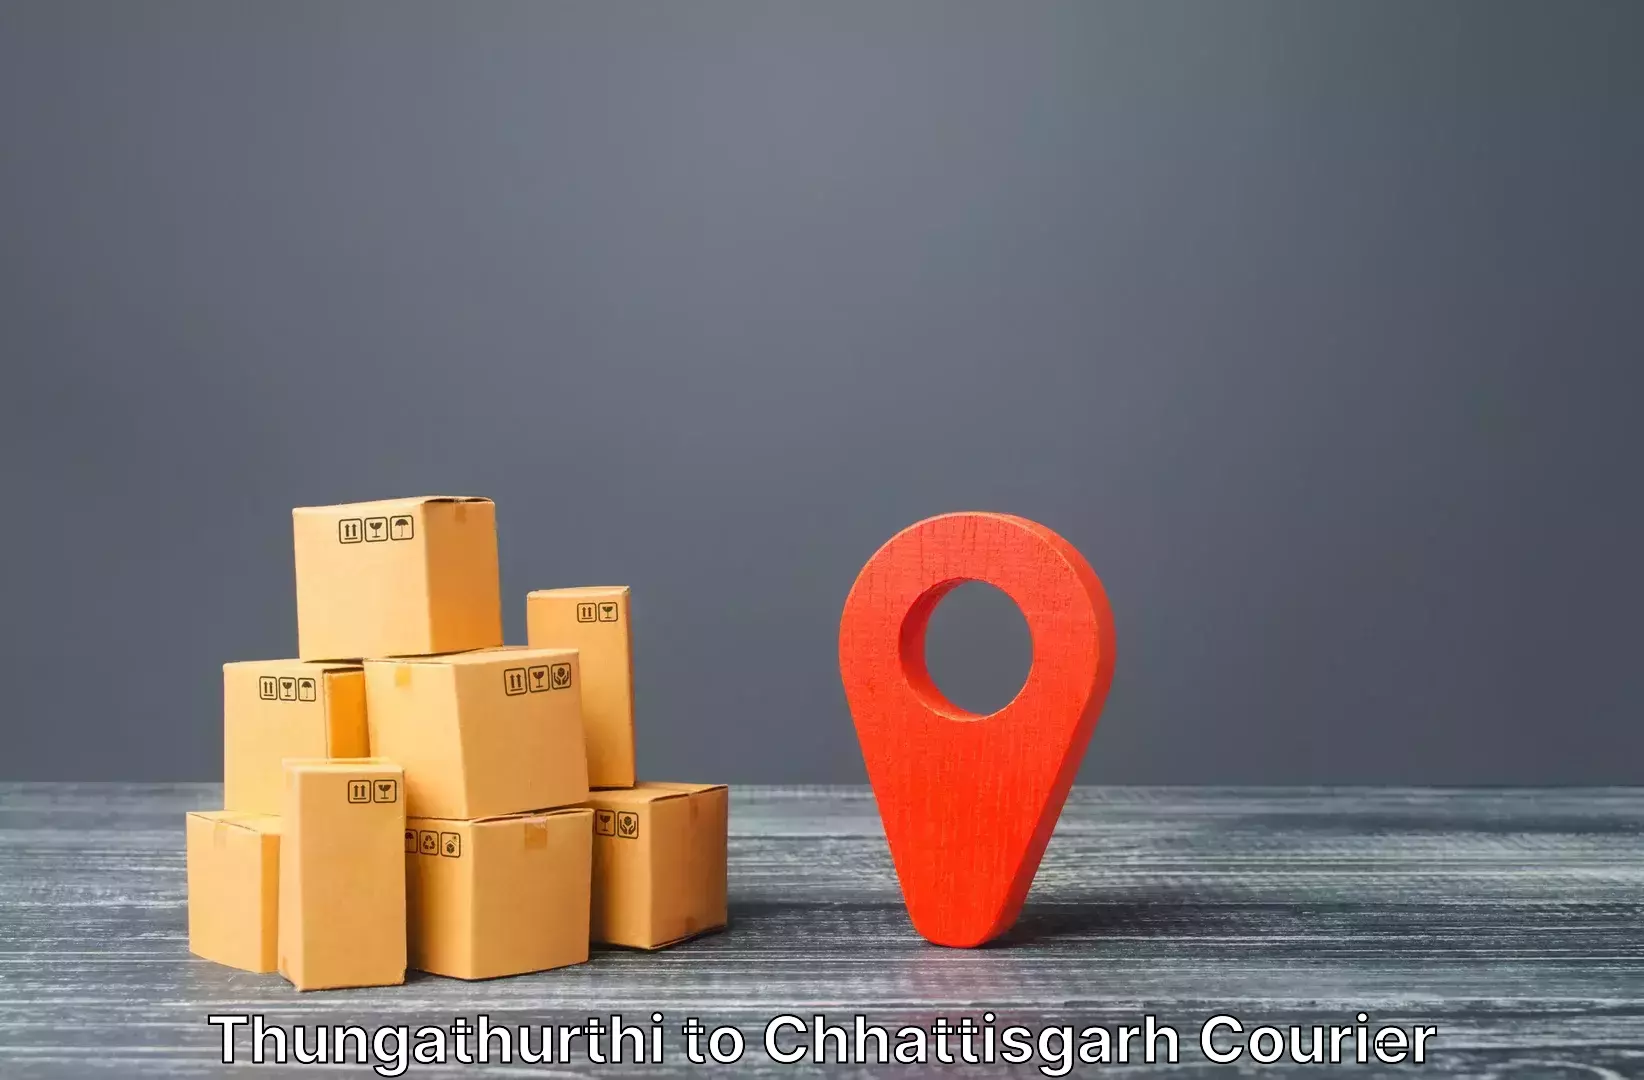 Luggage shipment tracking Thungathurthi to Ratanpur